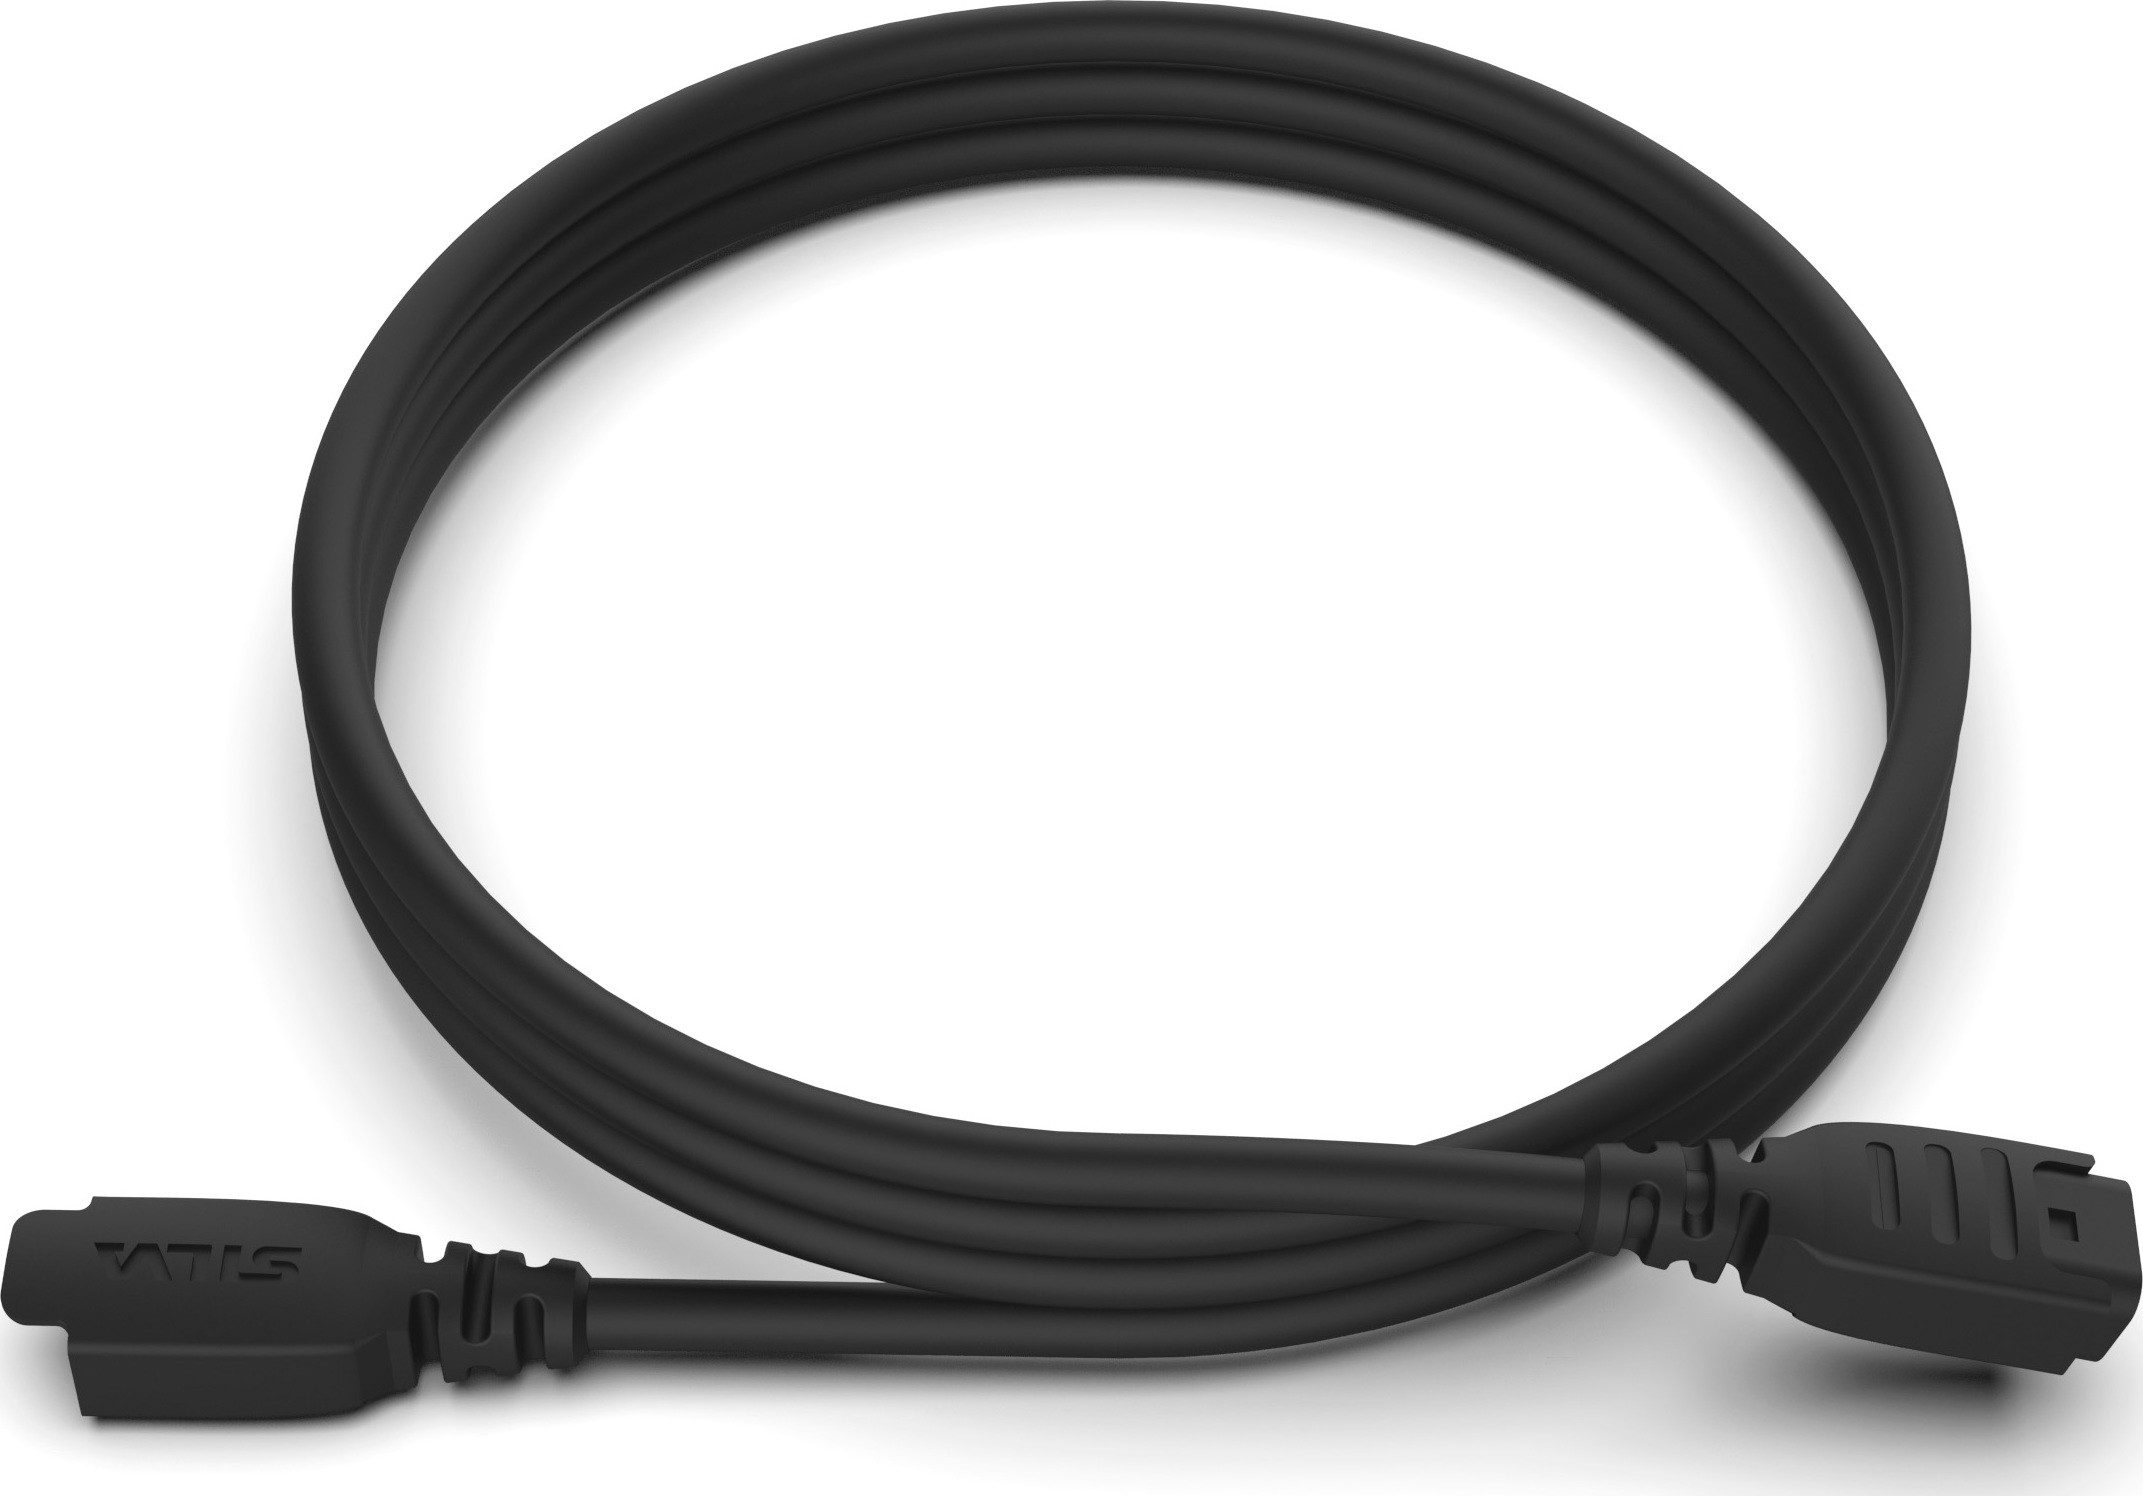 Silva Silva Spectra Extension Cable Nocolour No Size, No colour